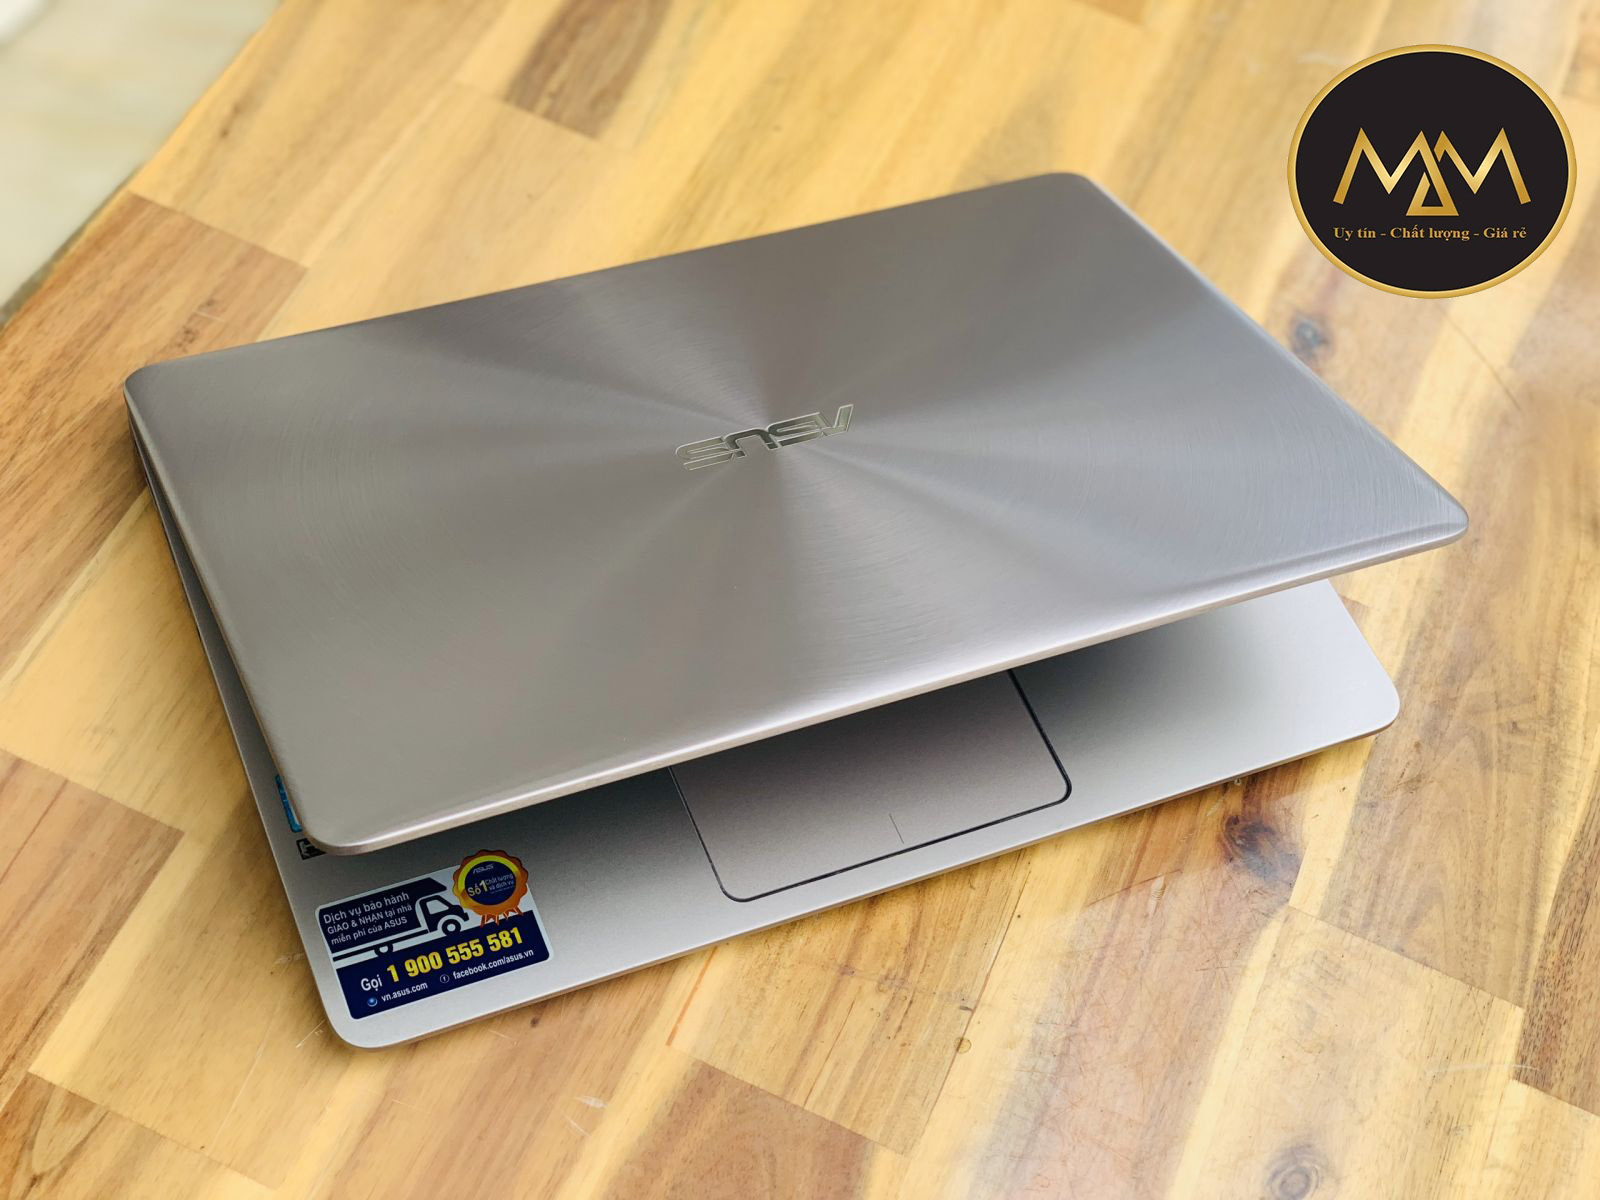 Laptop Asus Zenbook UX410UA i5 7200U